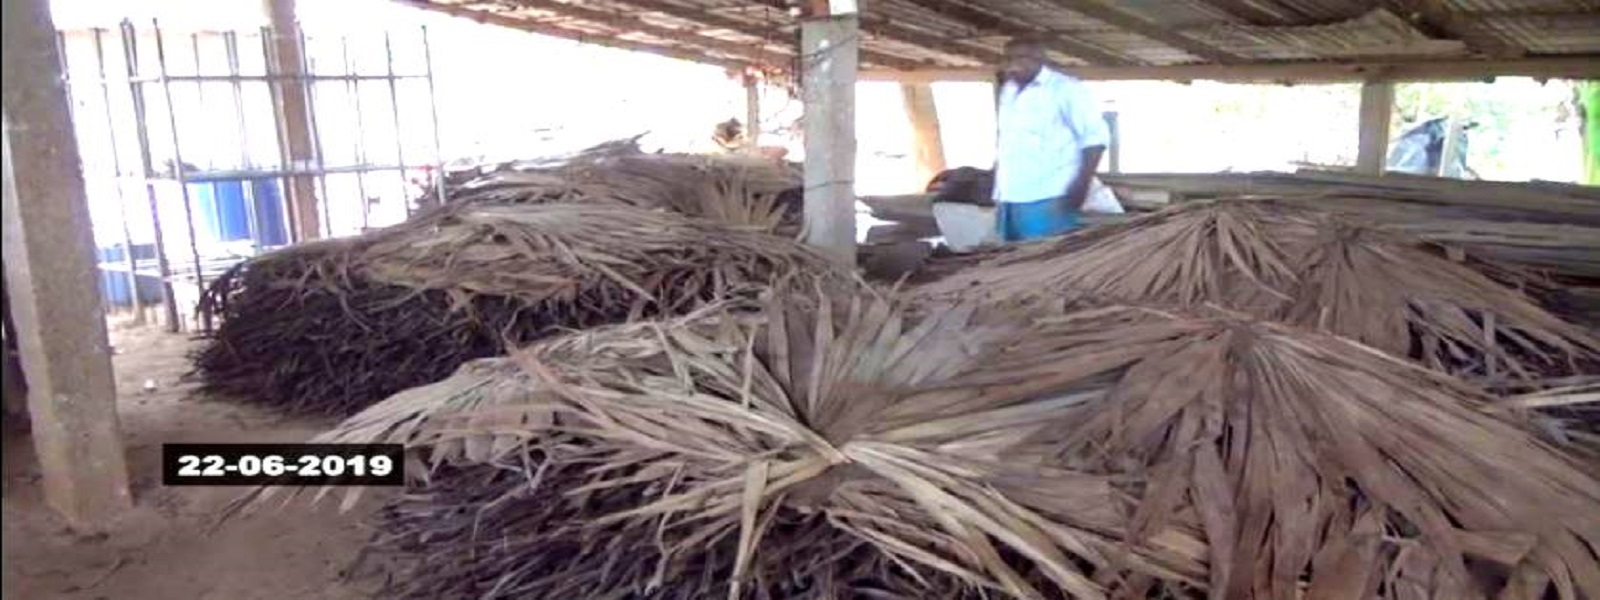 மாற முடியா நிலையில் புகையிலை செய்கையாளர்கள்